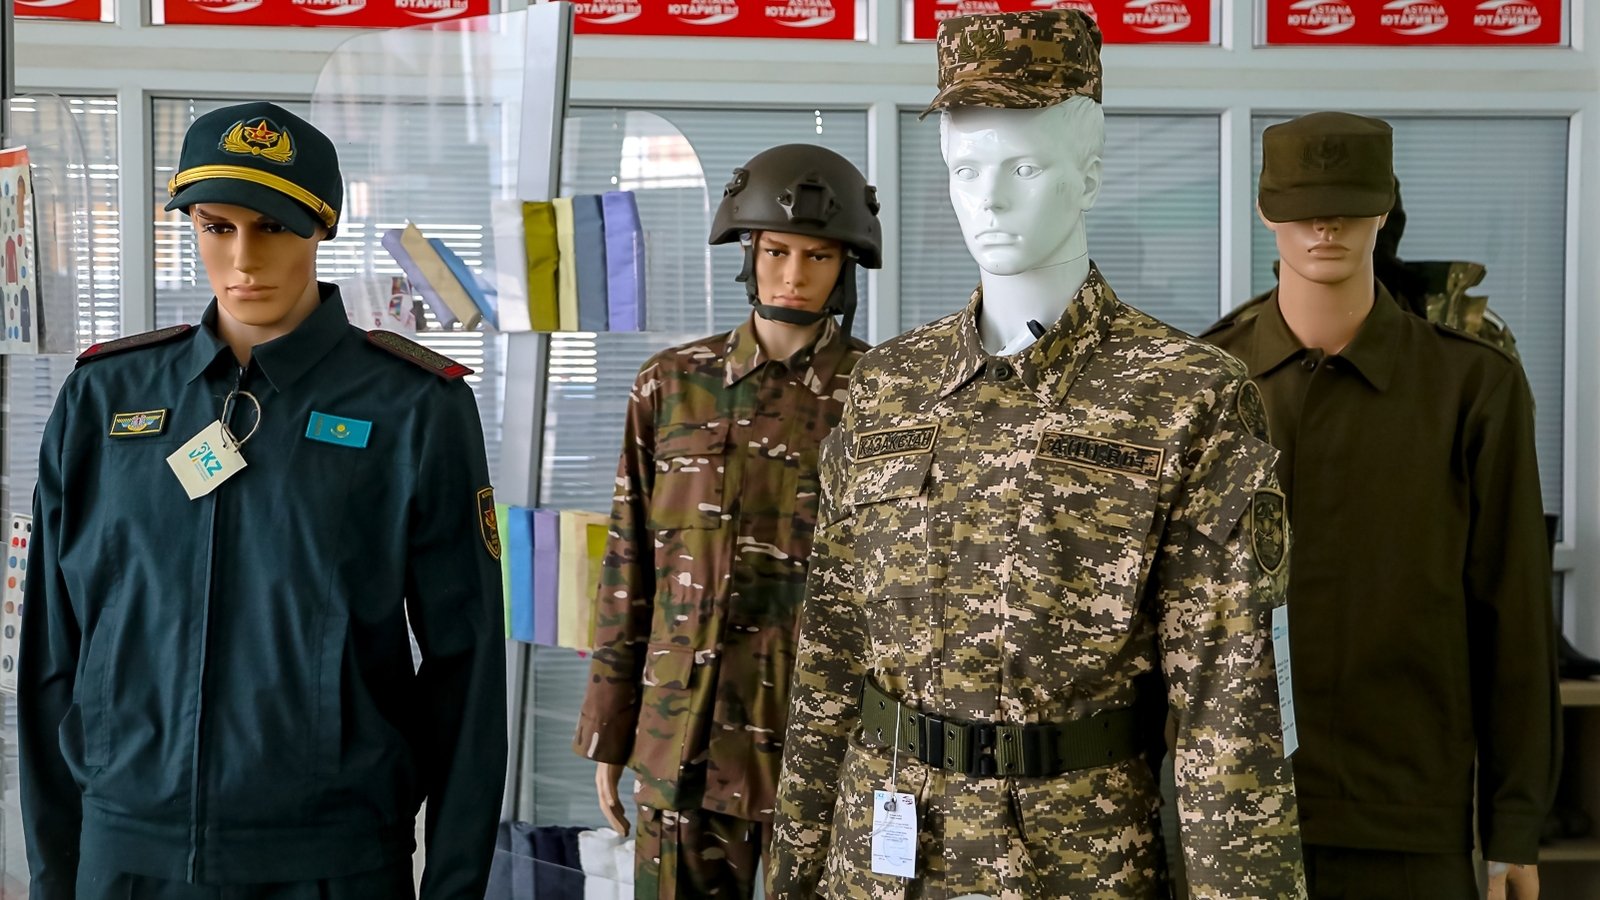 армия форма одежды фото